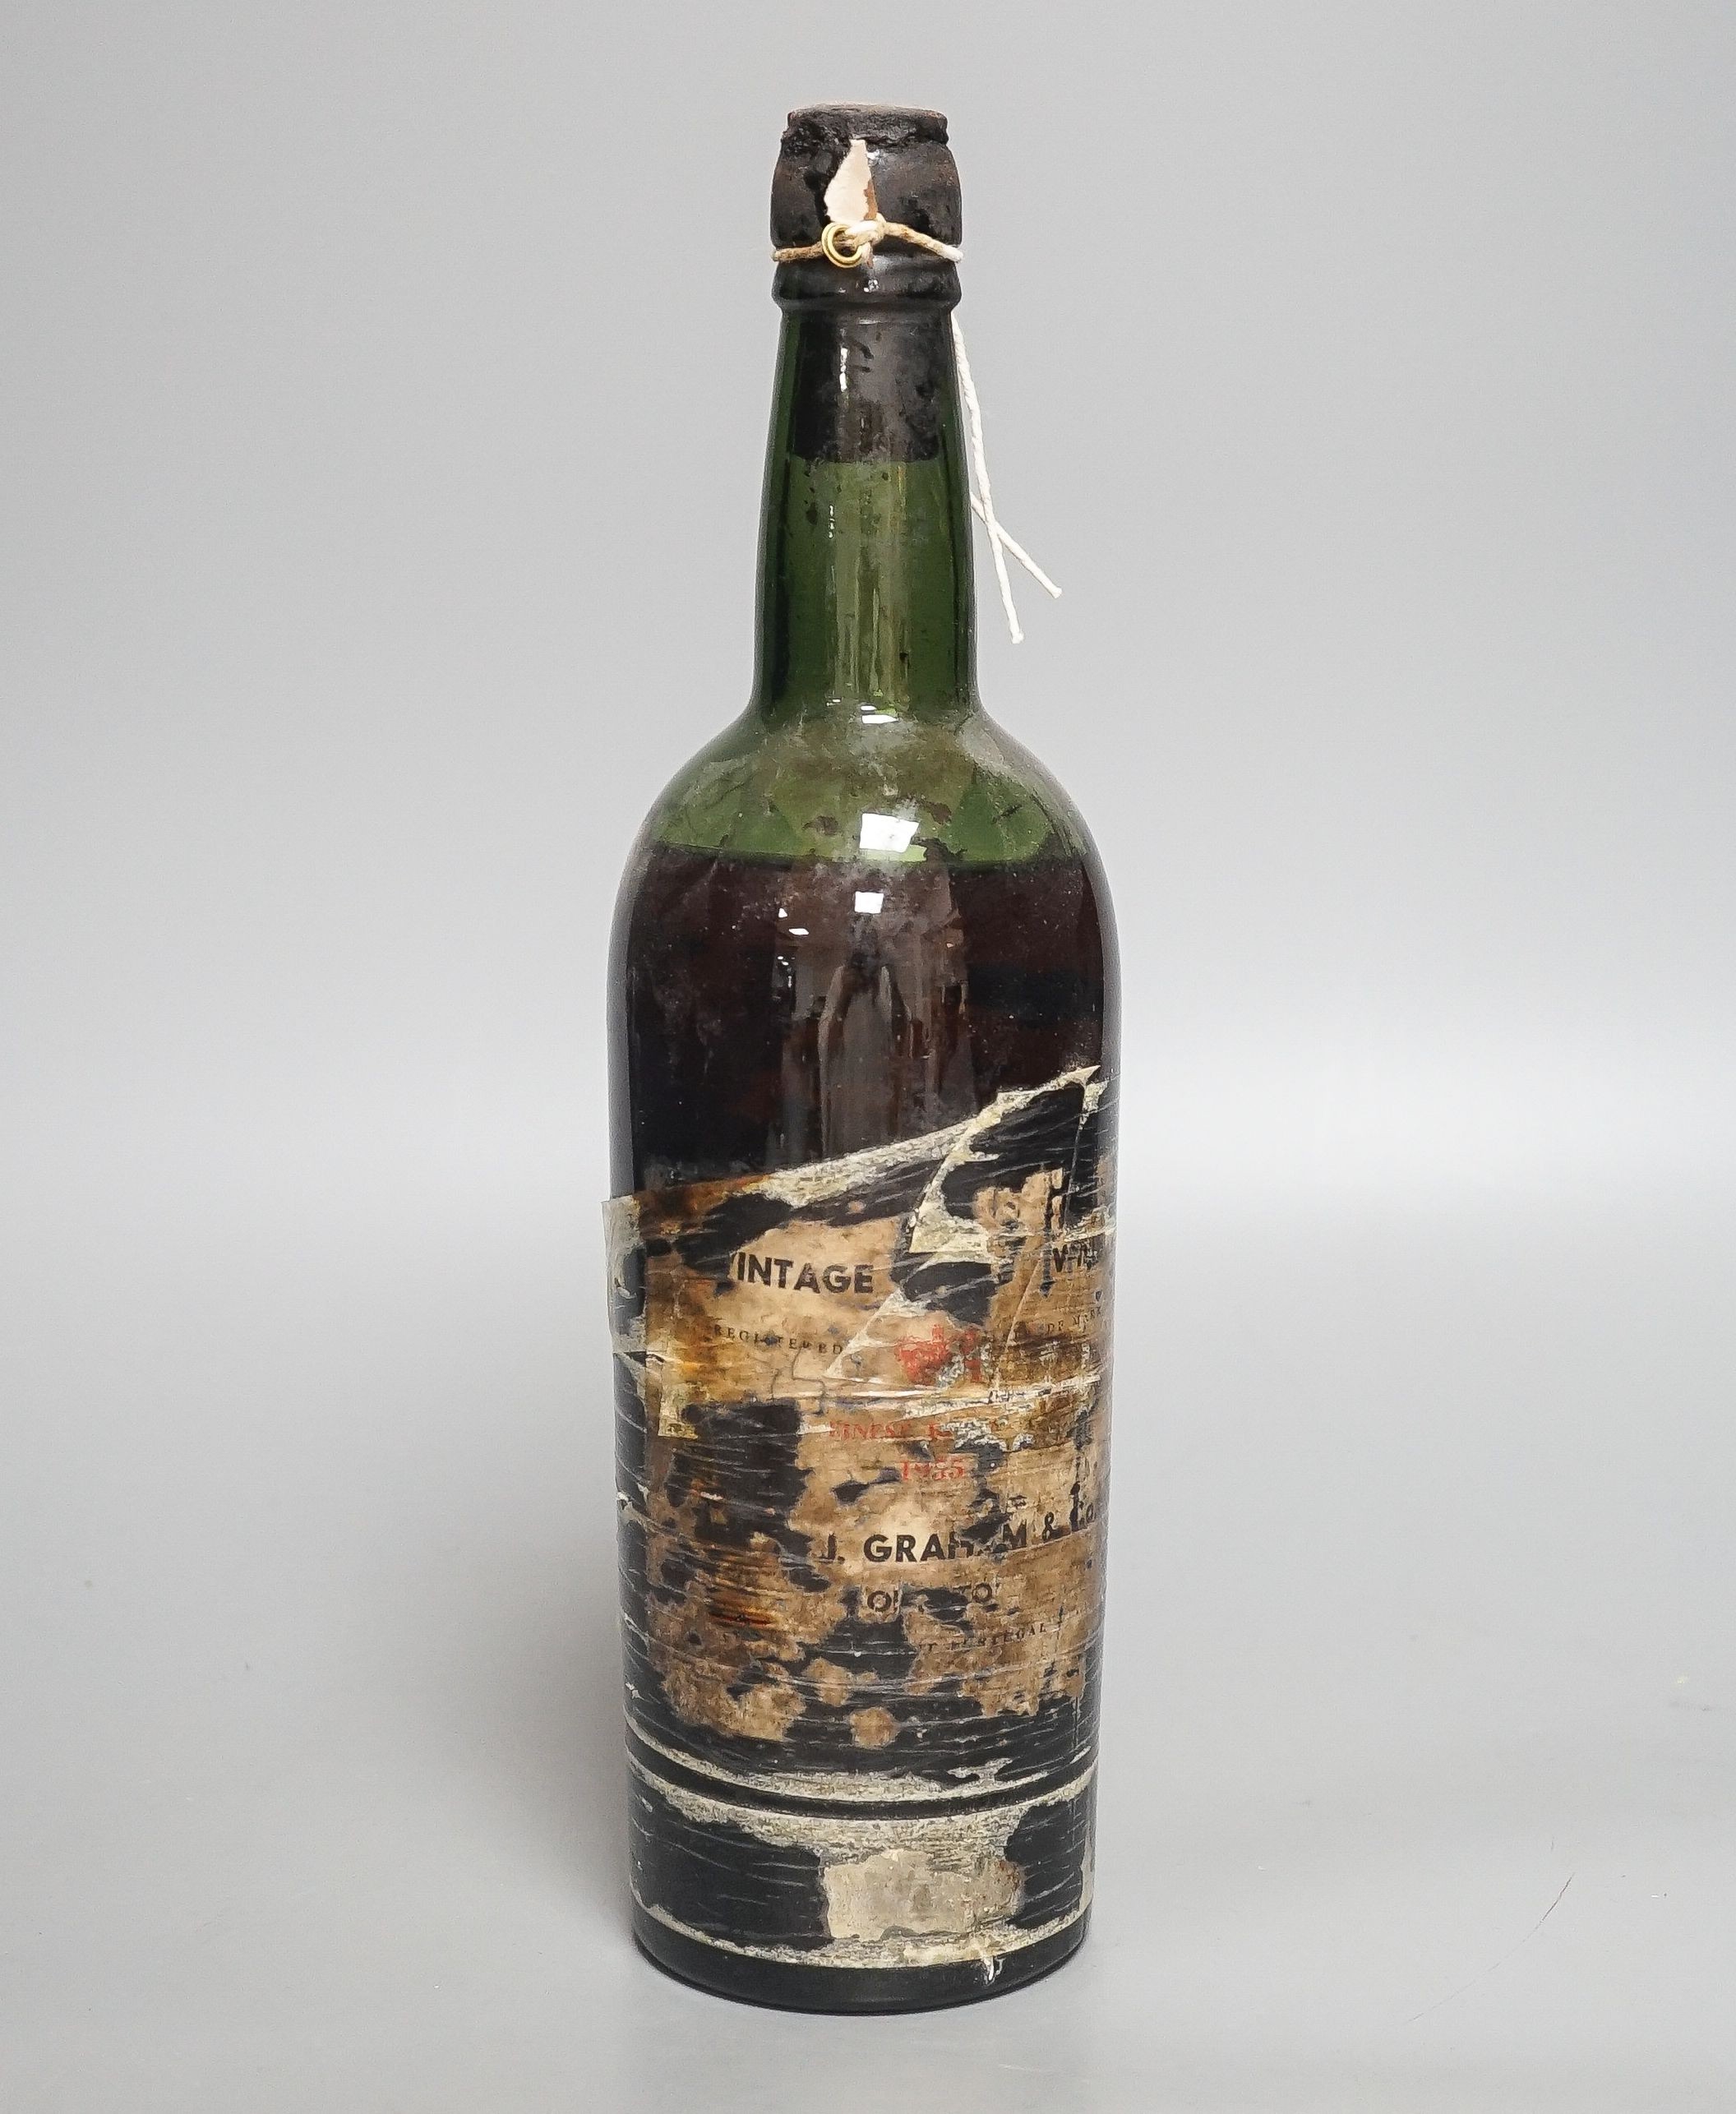 One bottle of Graham 1955 vintage port